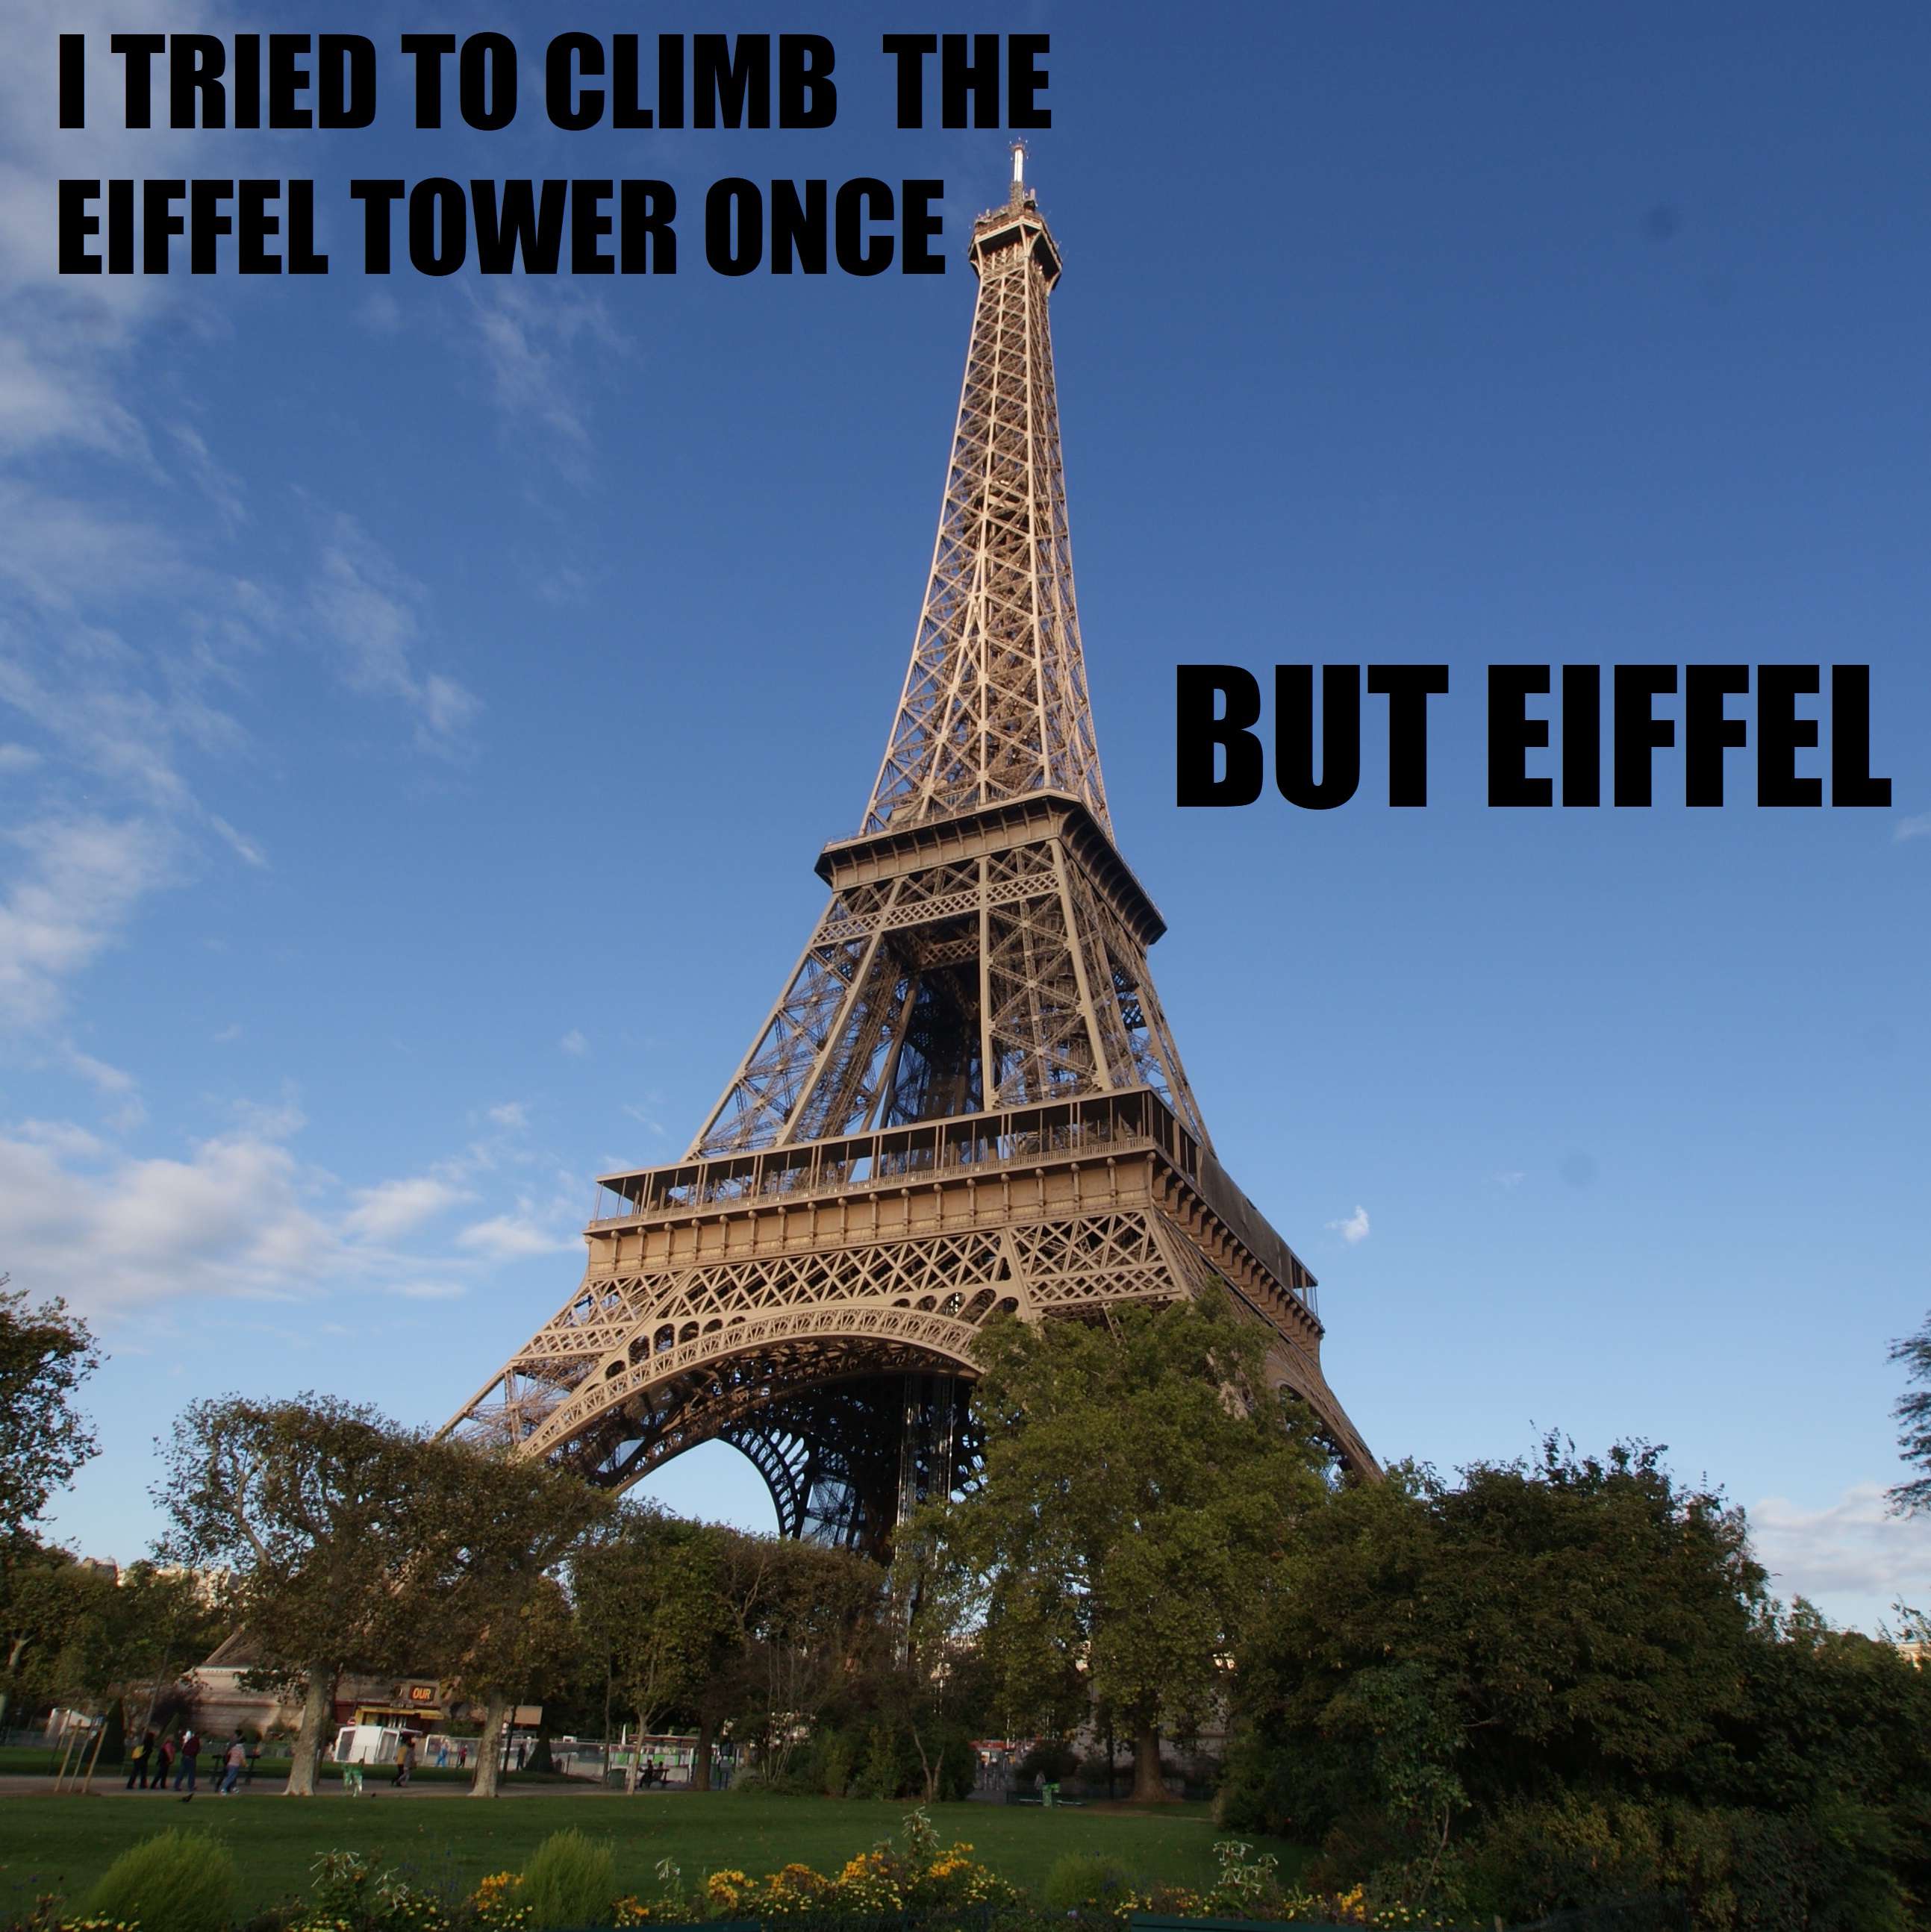 Eiffel Tower jokes